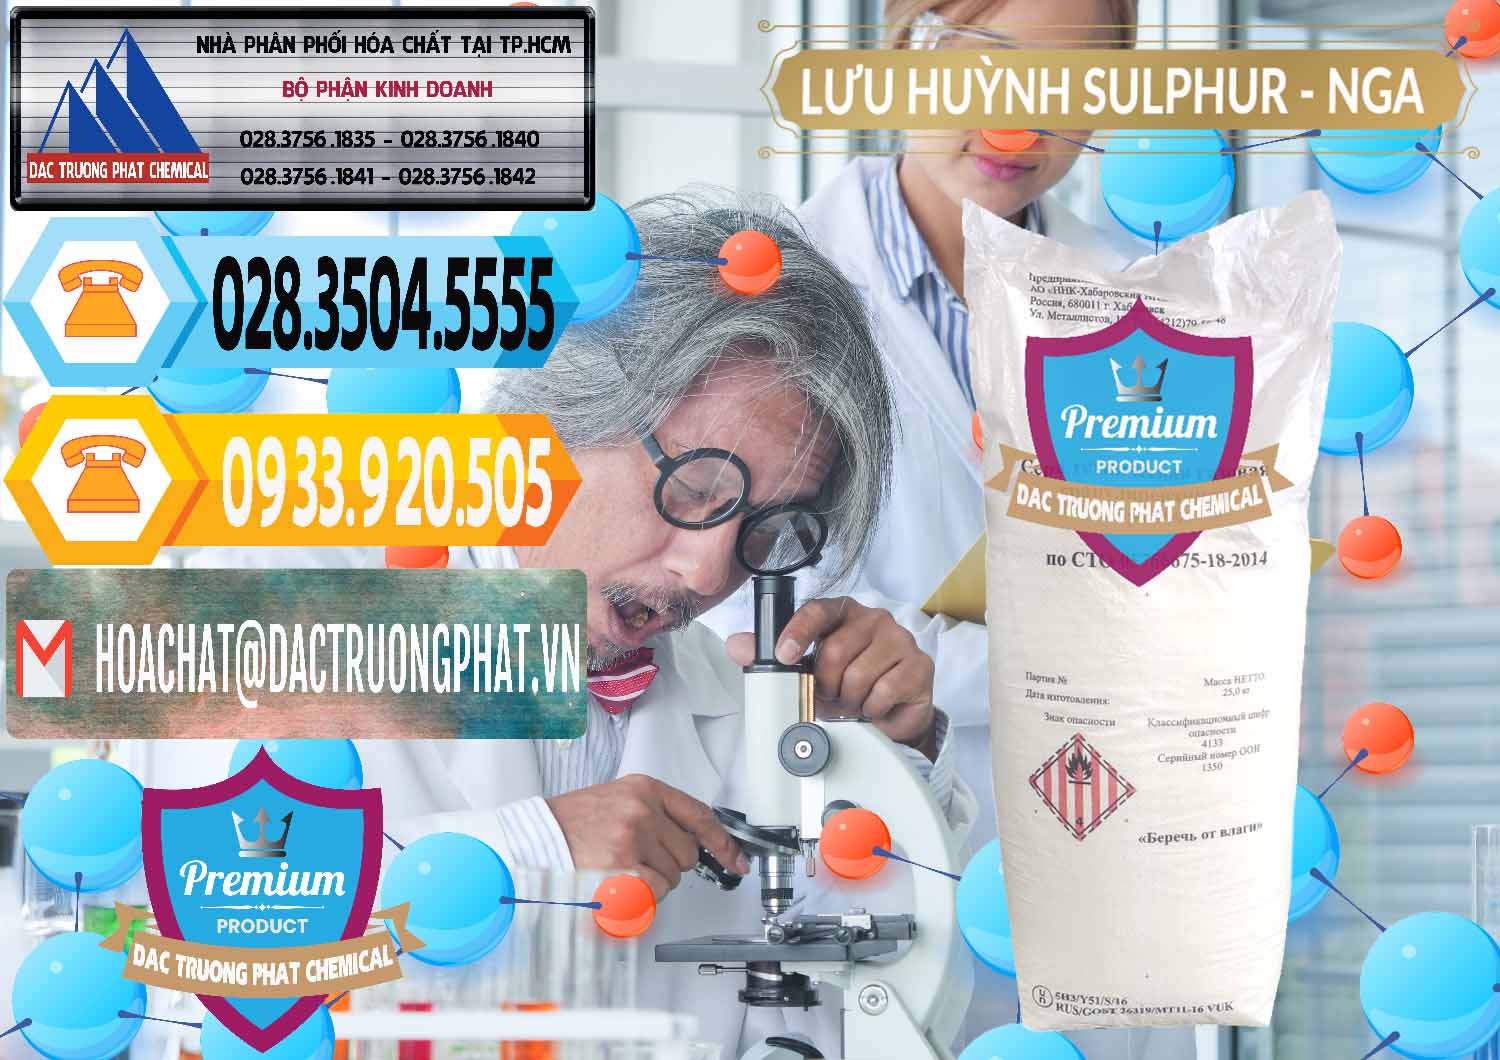 Cty chuyên bán và phân phối Lưu huỳnh Hạt - Sulfur Nga Russia - 0200 - Công ty chuyên cung cấp & kinh doanh hóa chất tại TP.HCM - hoachattayrua.net